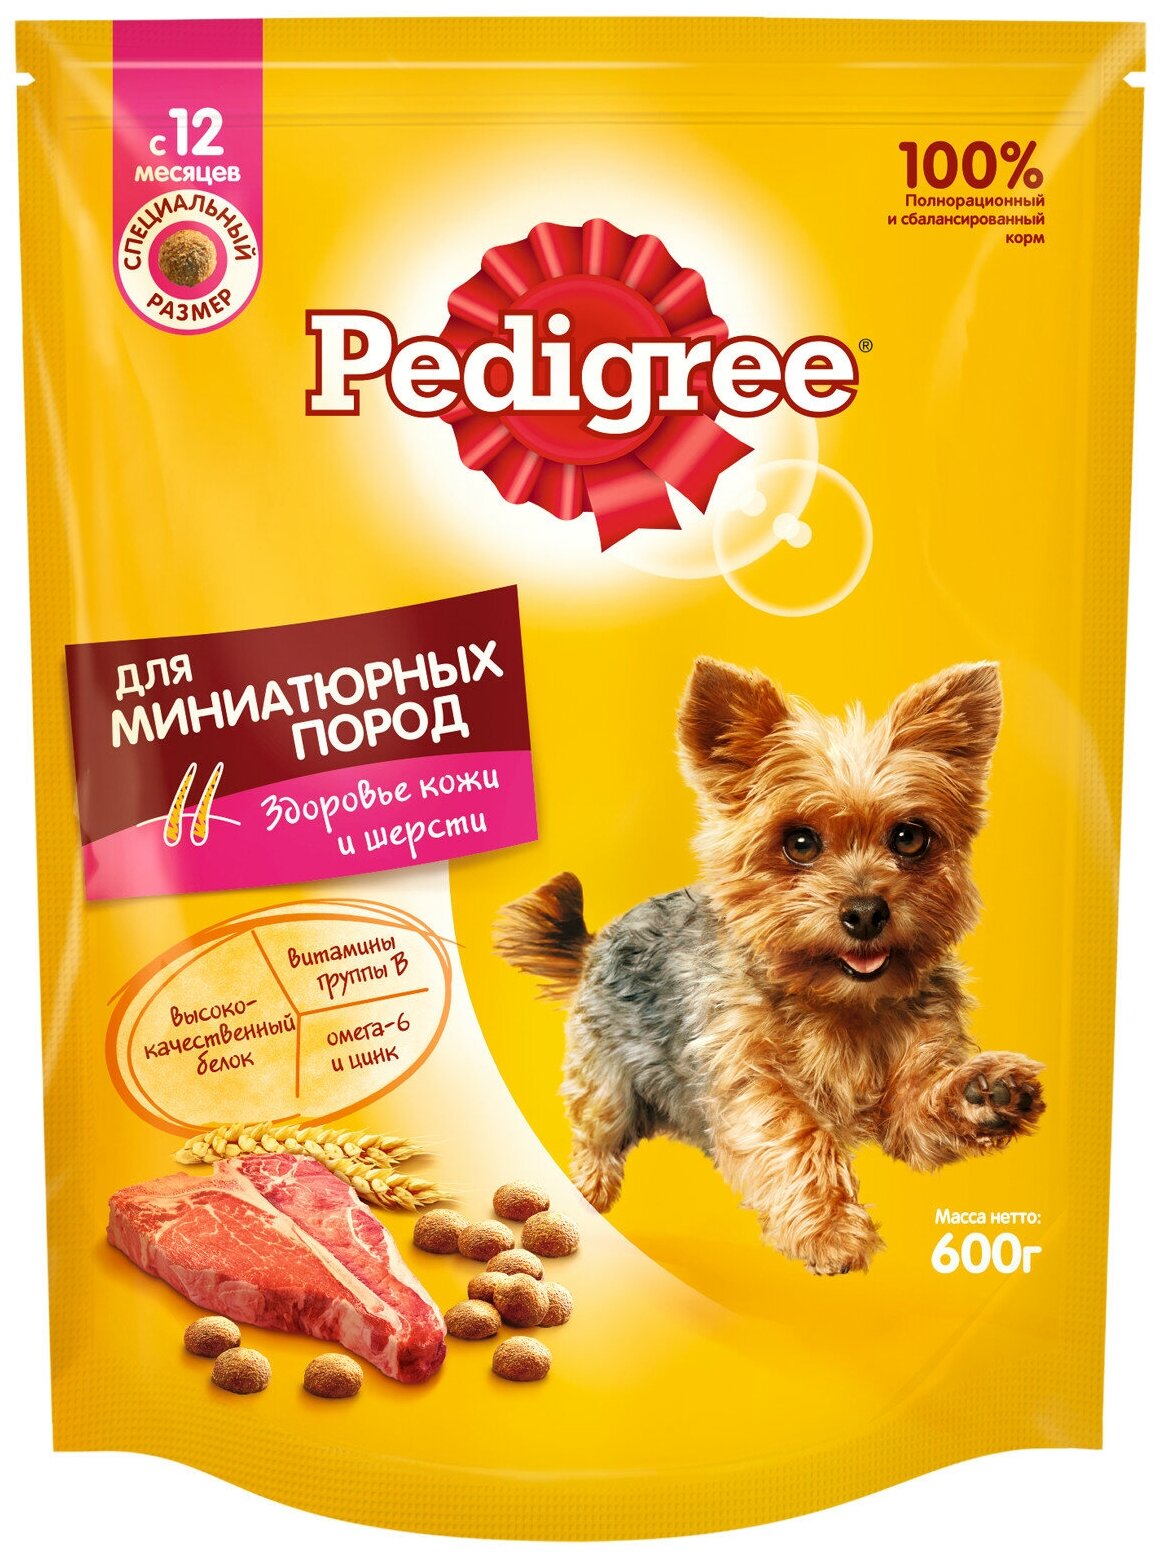 Сухой корм PEDIGREE для взрослых собак миниатюрных пород, с говядиной, 12шт. по 600г.